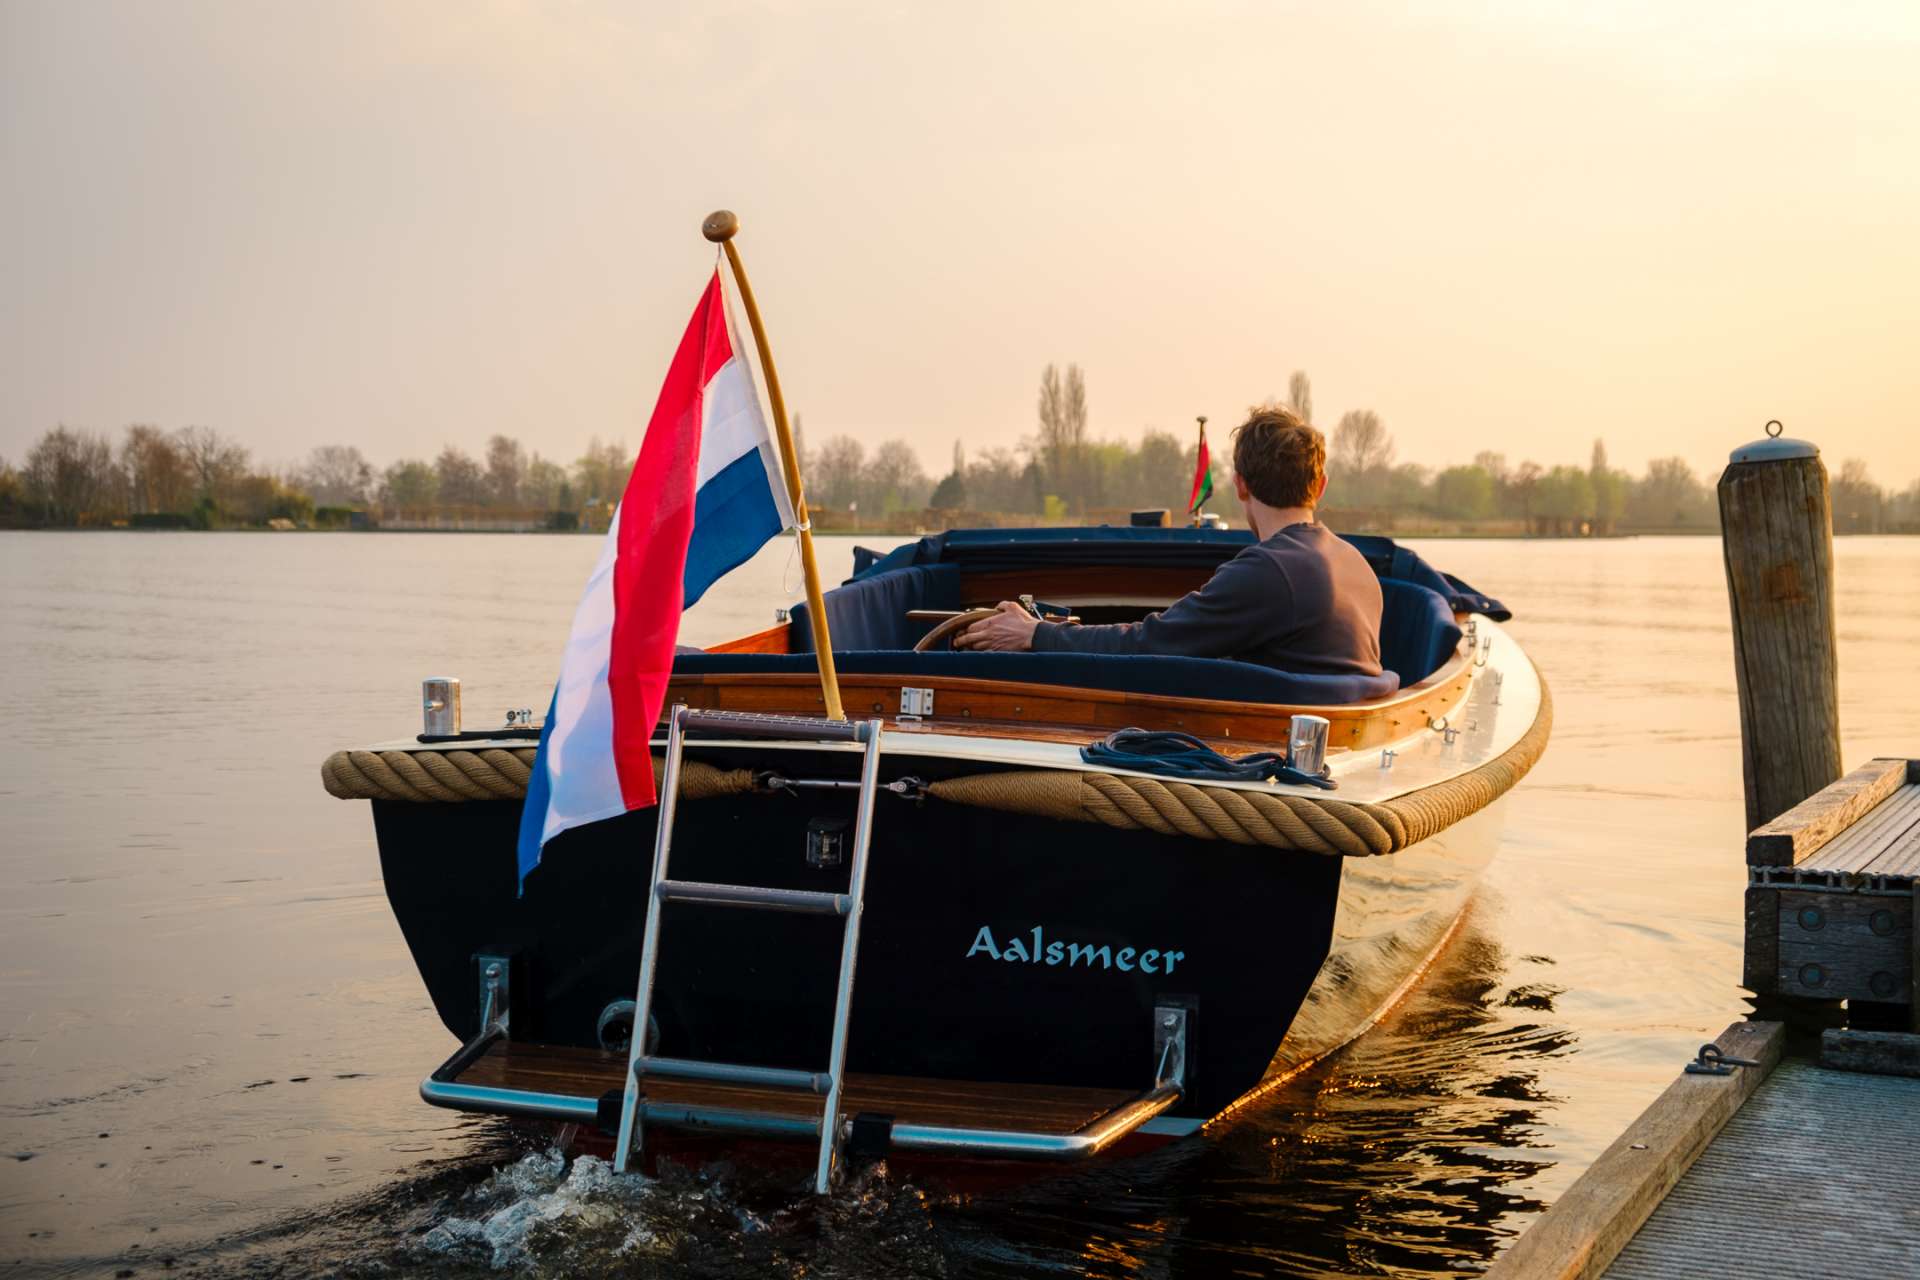 Stalen vlet - Yacht Charter Aalsmeer & Boat hire in Netherlands Aalsmeer 2